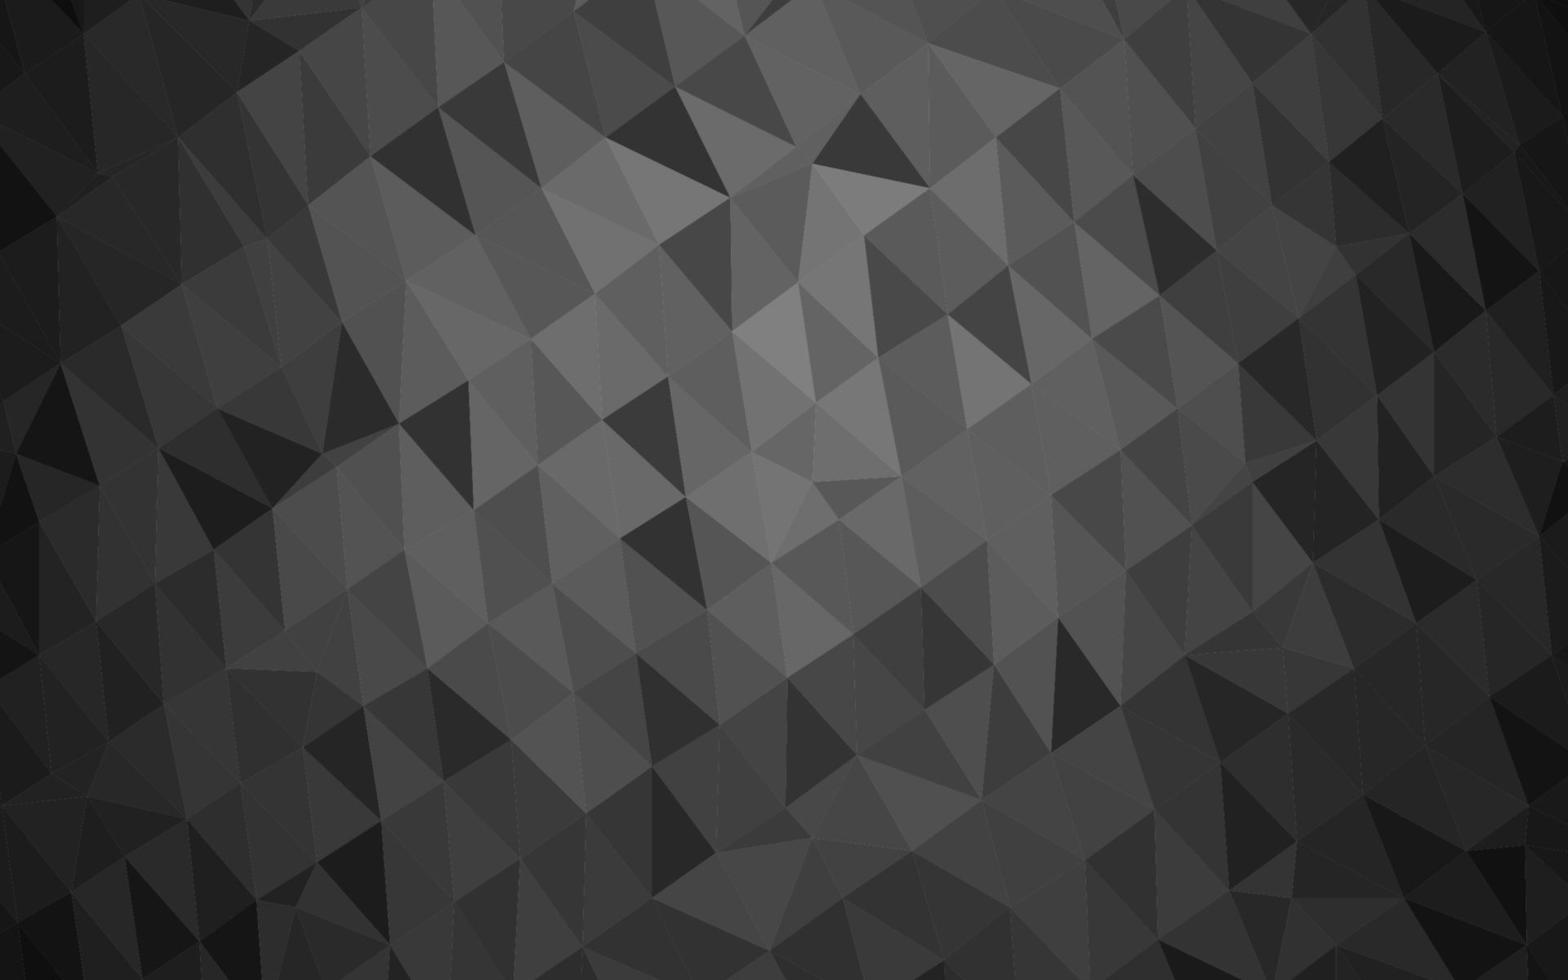 Plantilla de triángulo borroso de vector gris plateado oscuro.